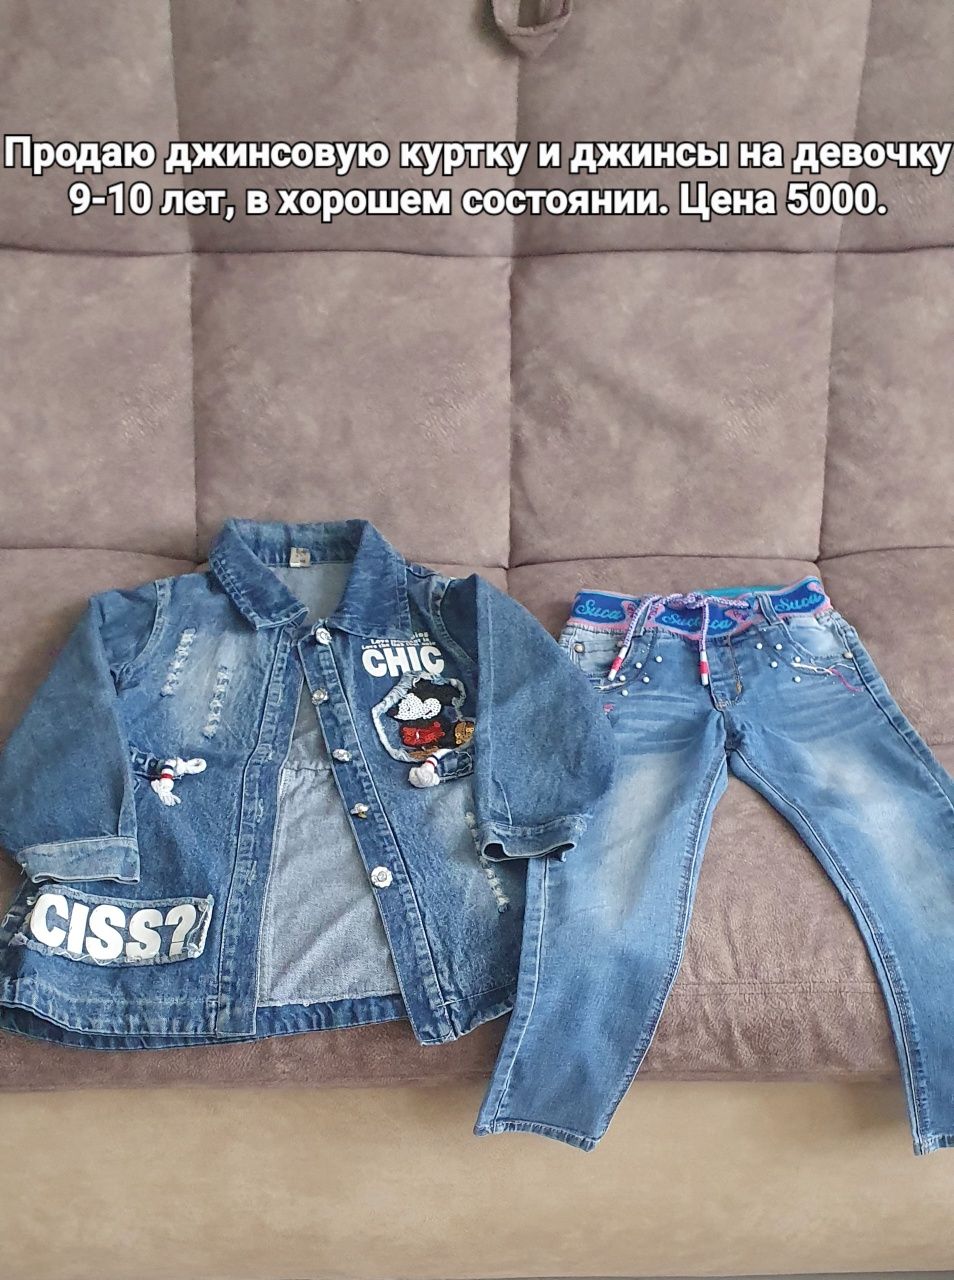 Продаю джинсовую куртку и джинсы на девочку.